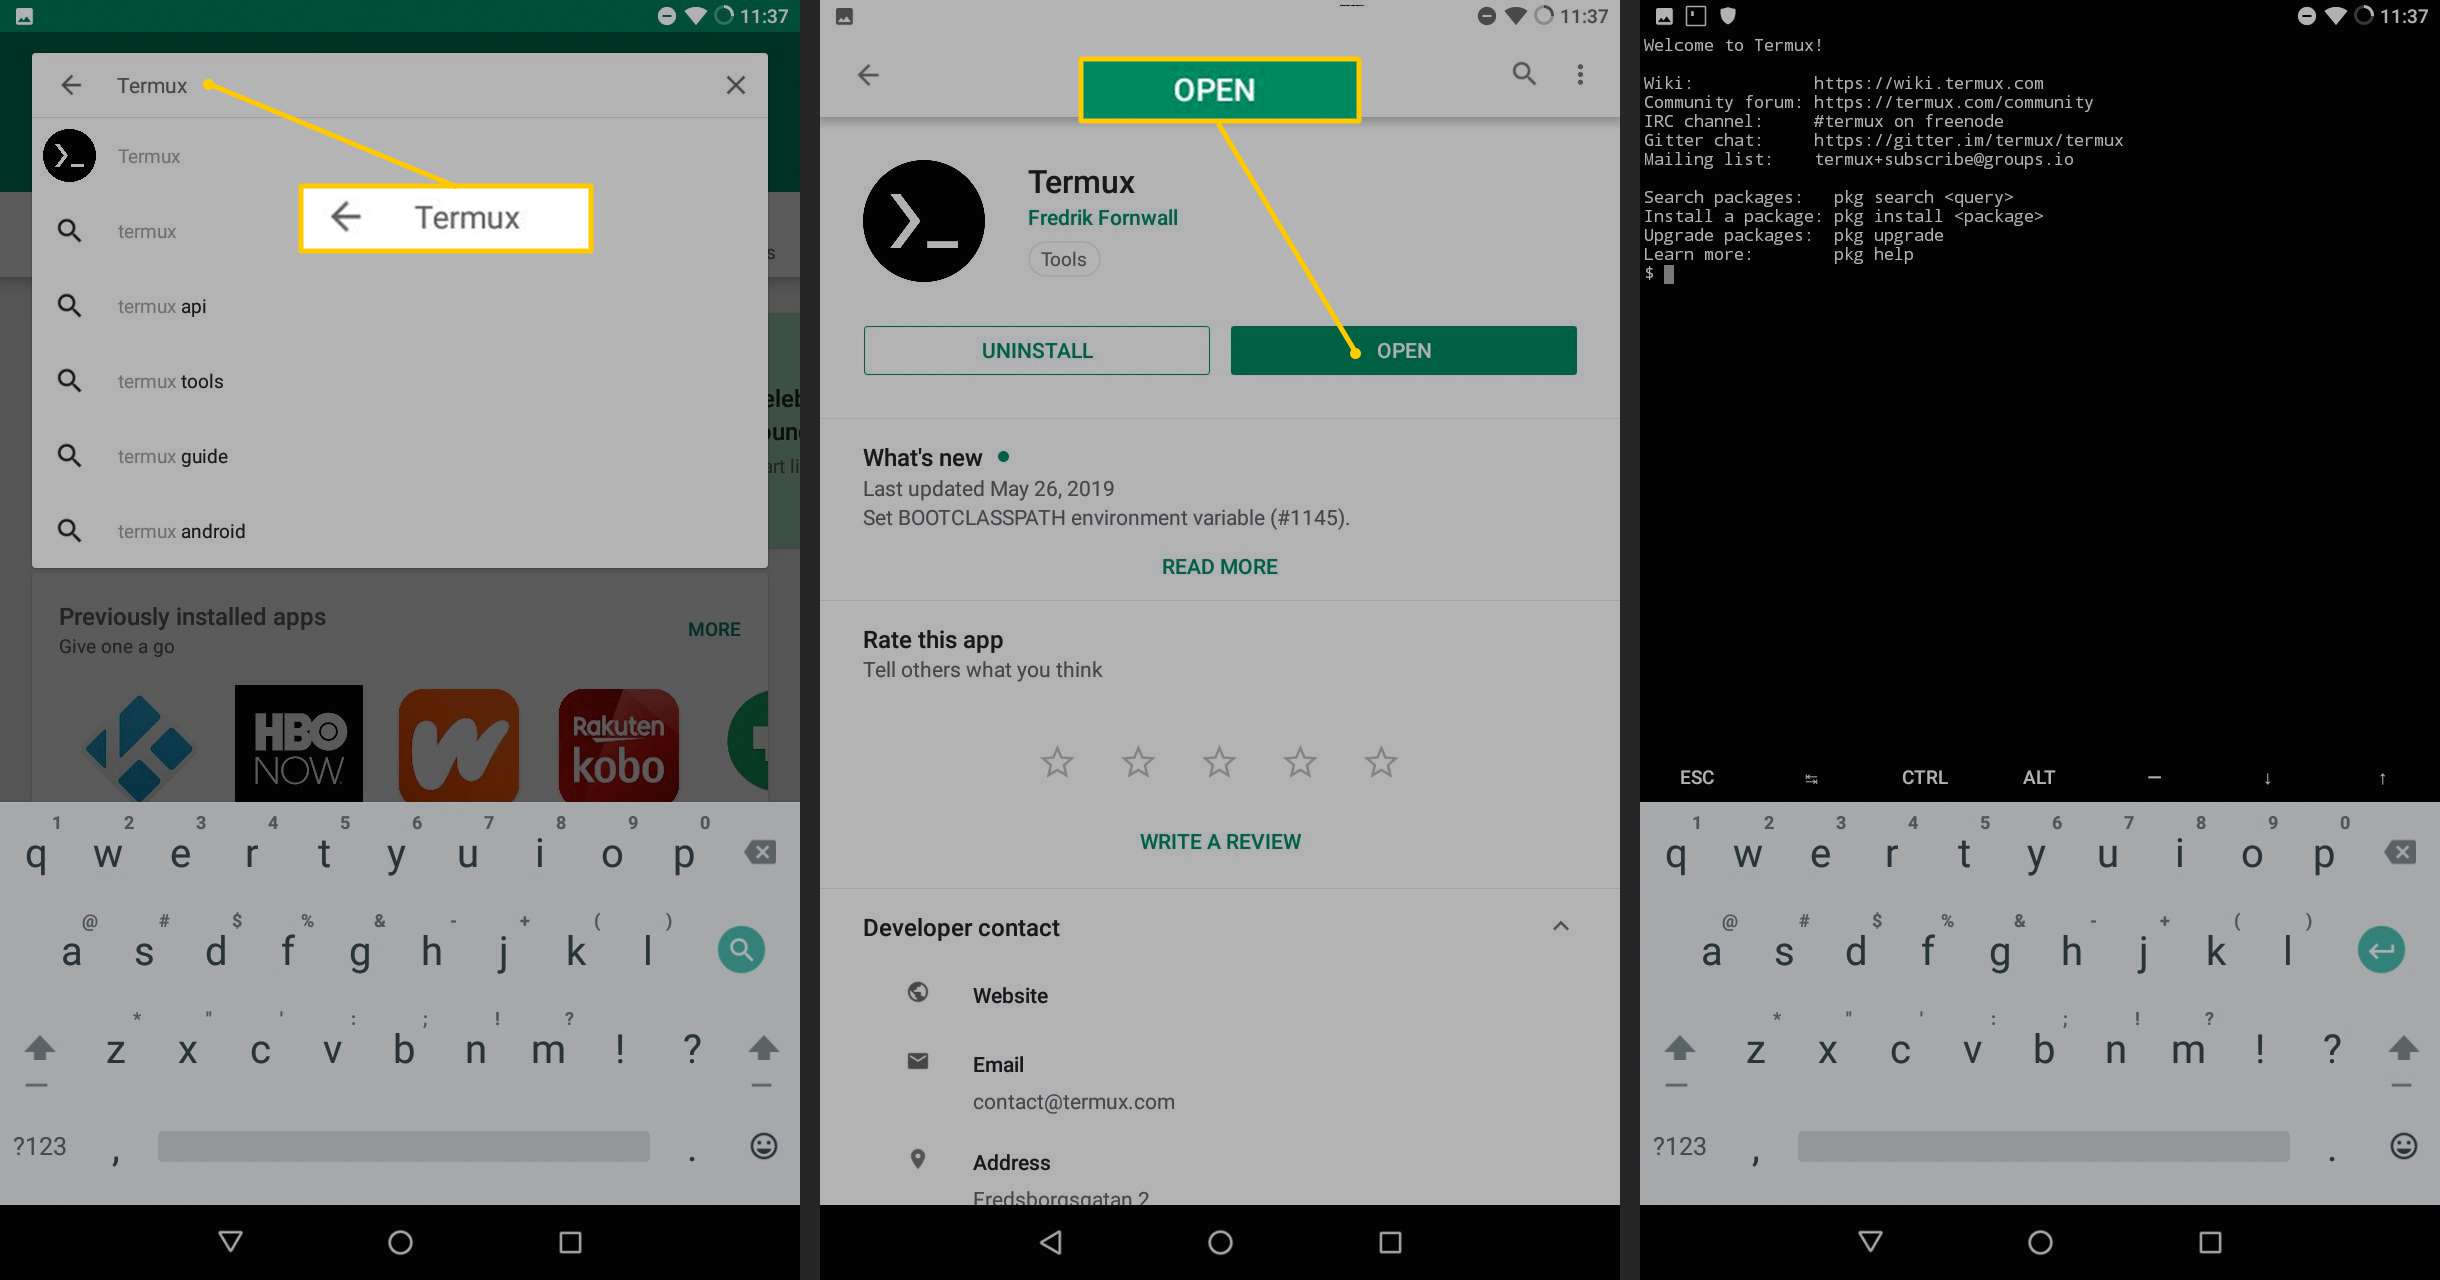 Termux-zoekveld, Open-knop, Termux-app op Android